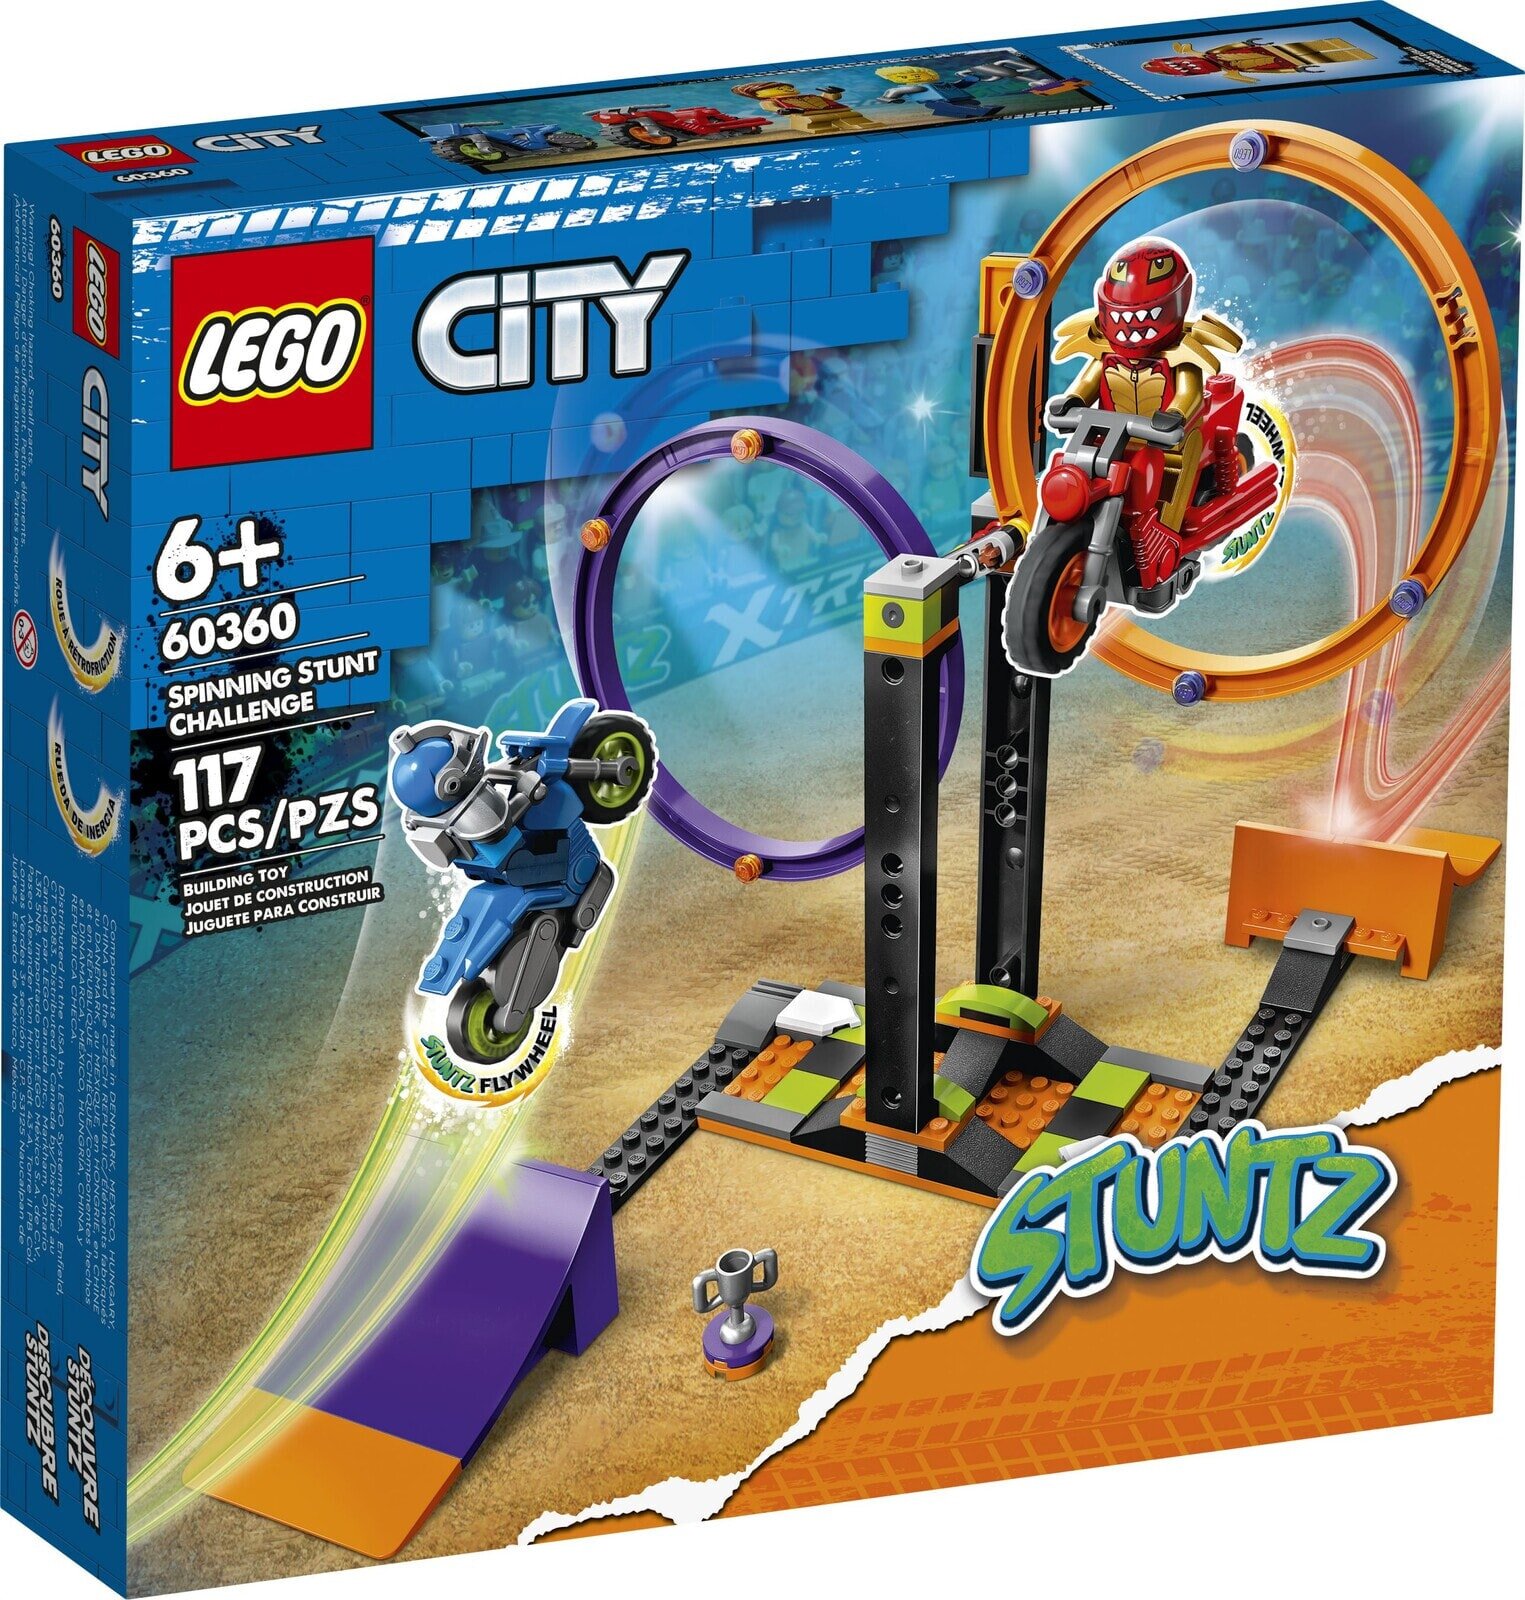 Набор с элементами конструктора LEGO City 60360 Spinning Stunt Challenge Испытание каскадеров с вращением, 117 дет.